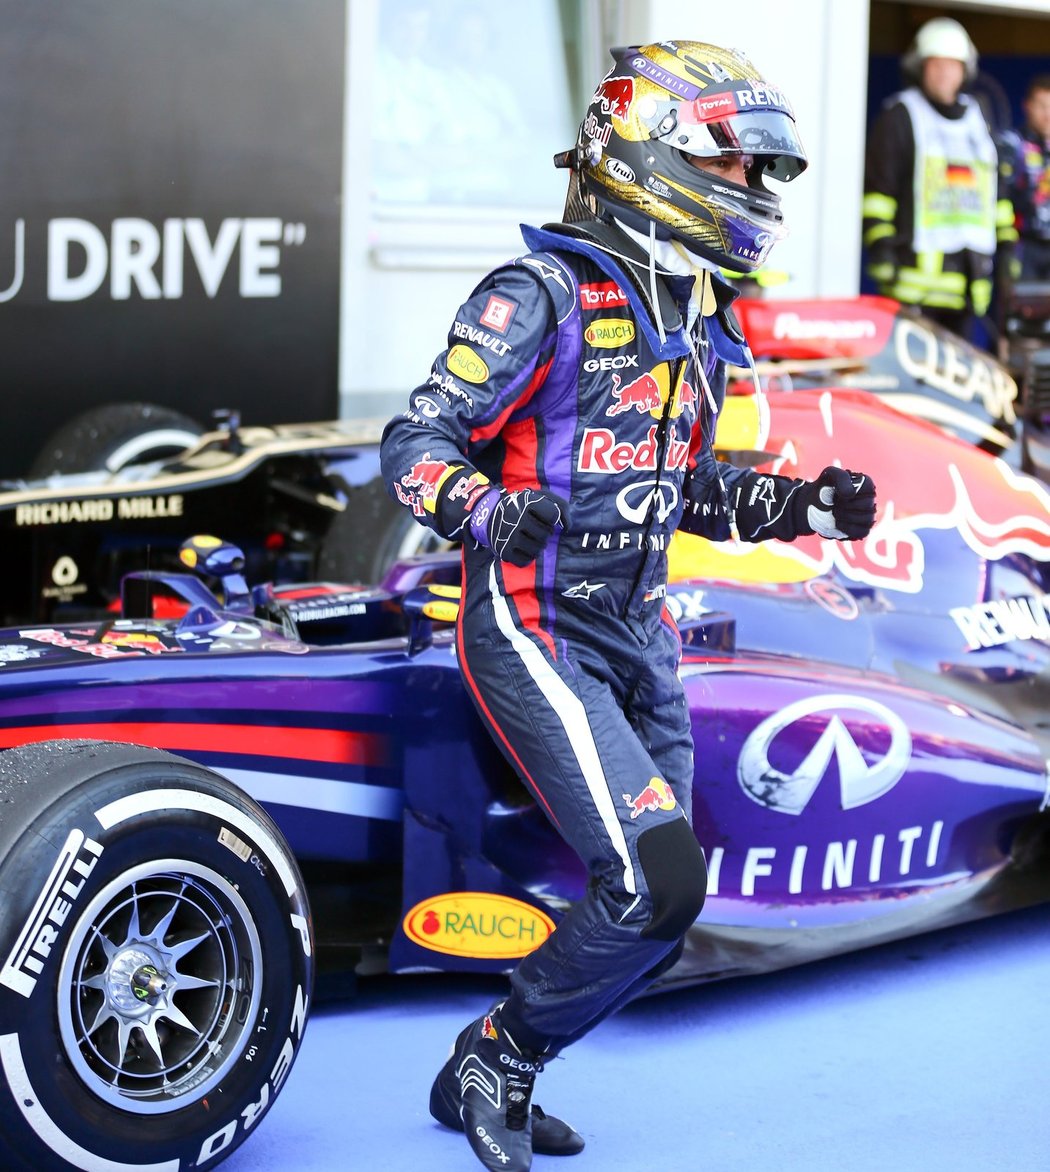 Mistr světa formule 1 Němec Sebastian Vettel vyhrál poprvé v kariéře domácí Velkou cenu a triumf si náležitě užíval na stupních vítězů i se šampaňským